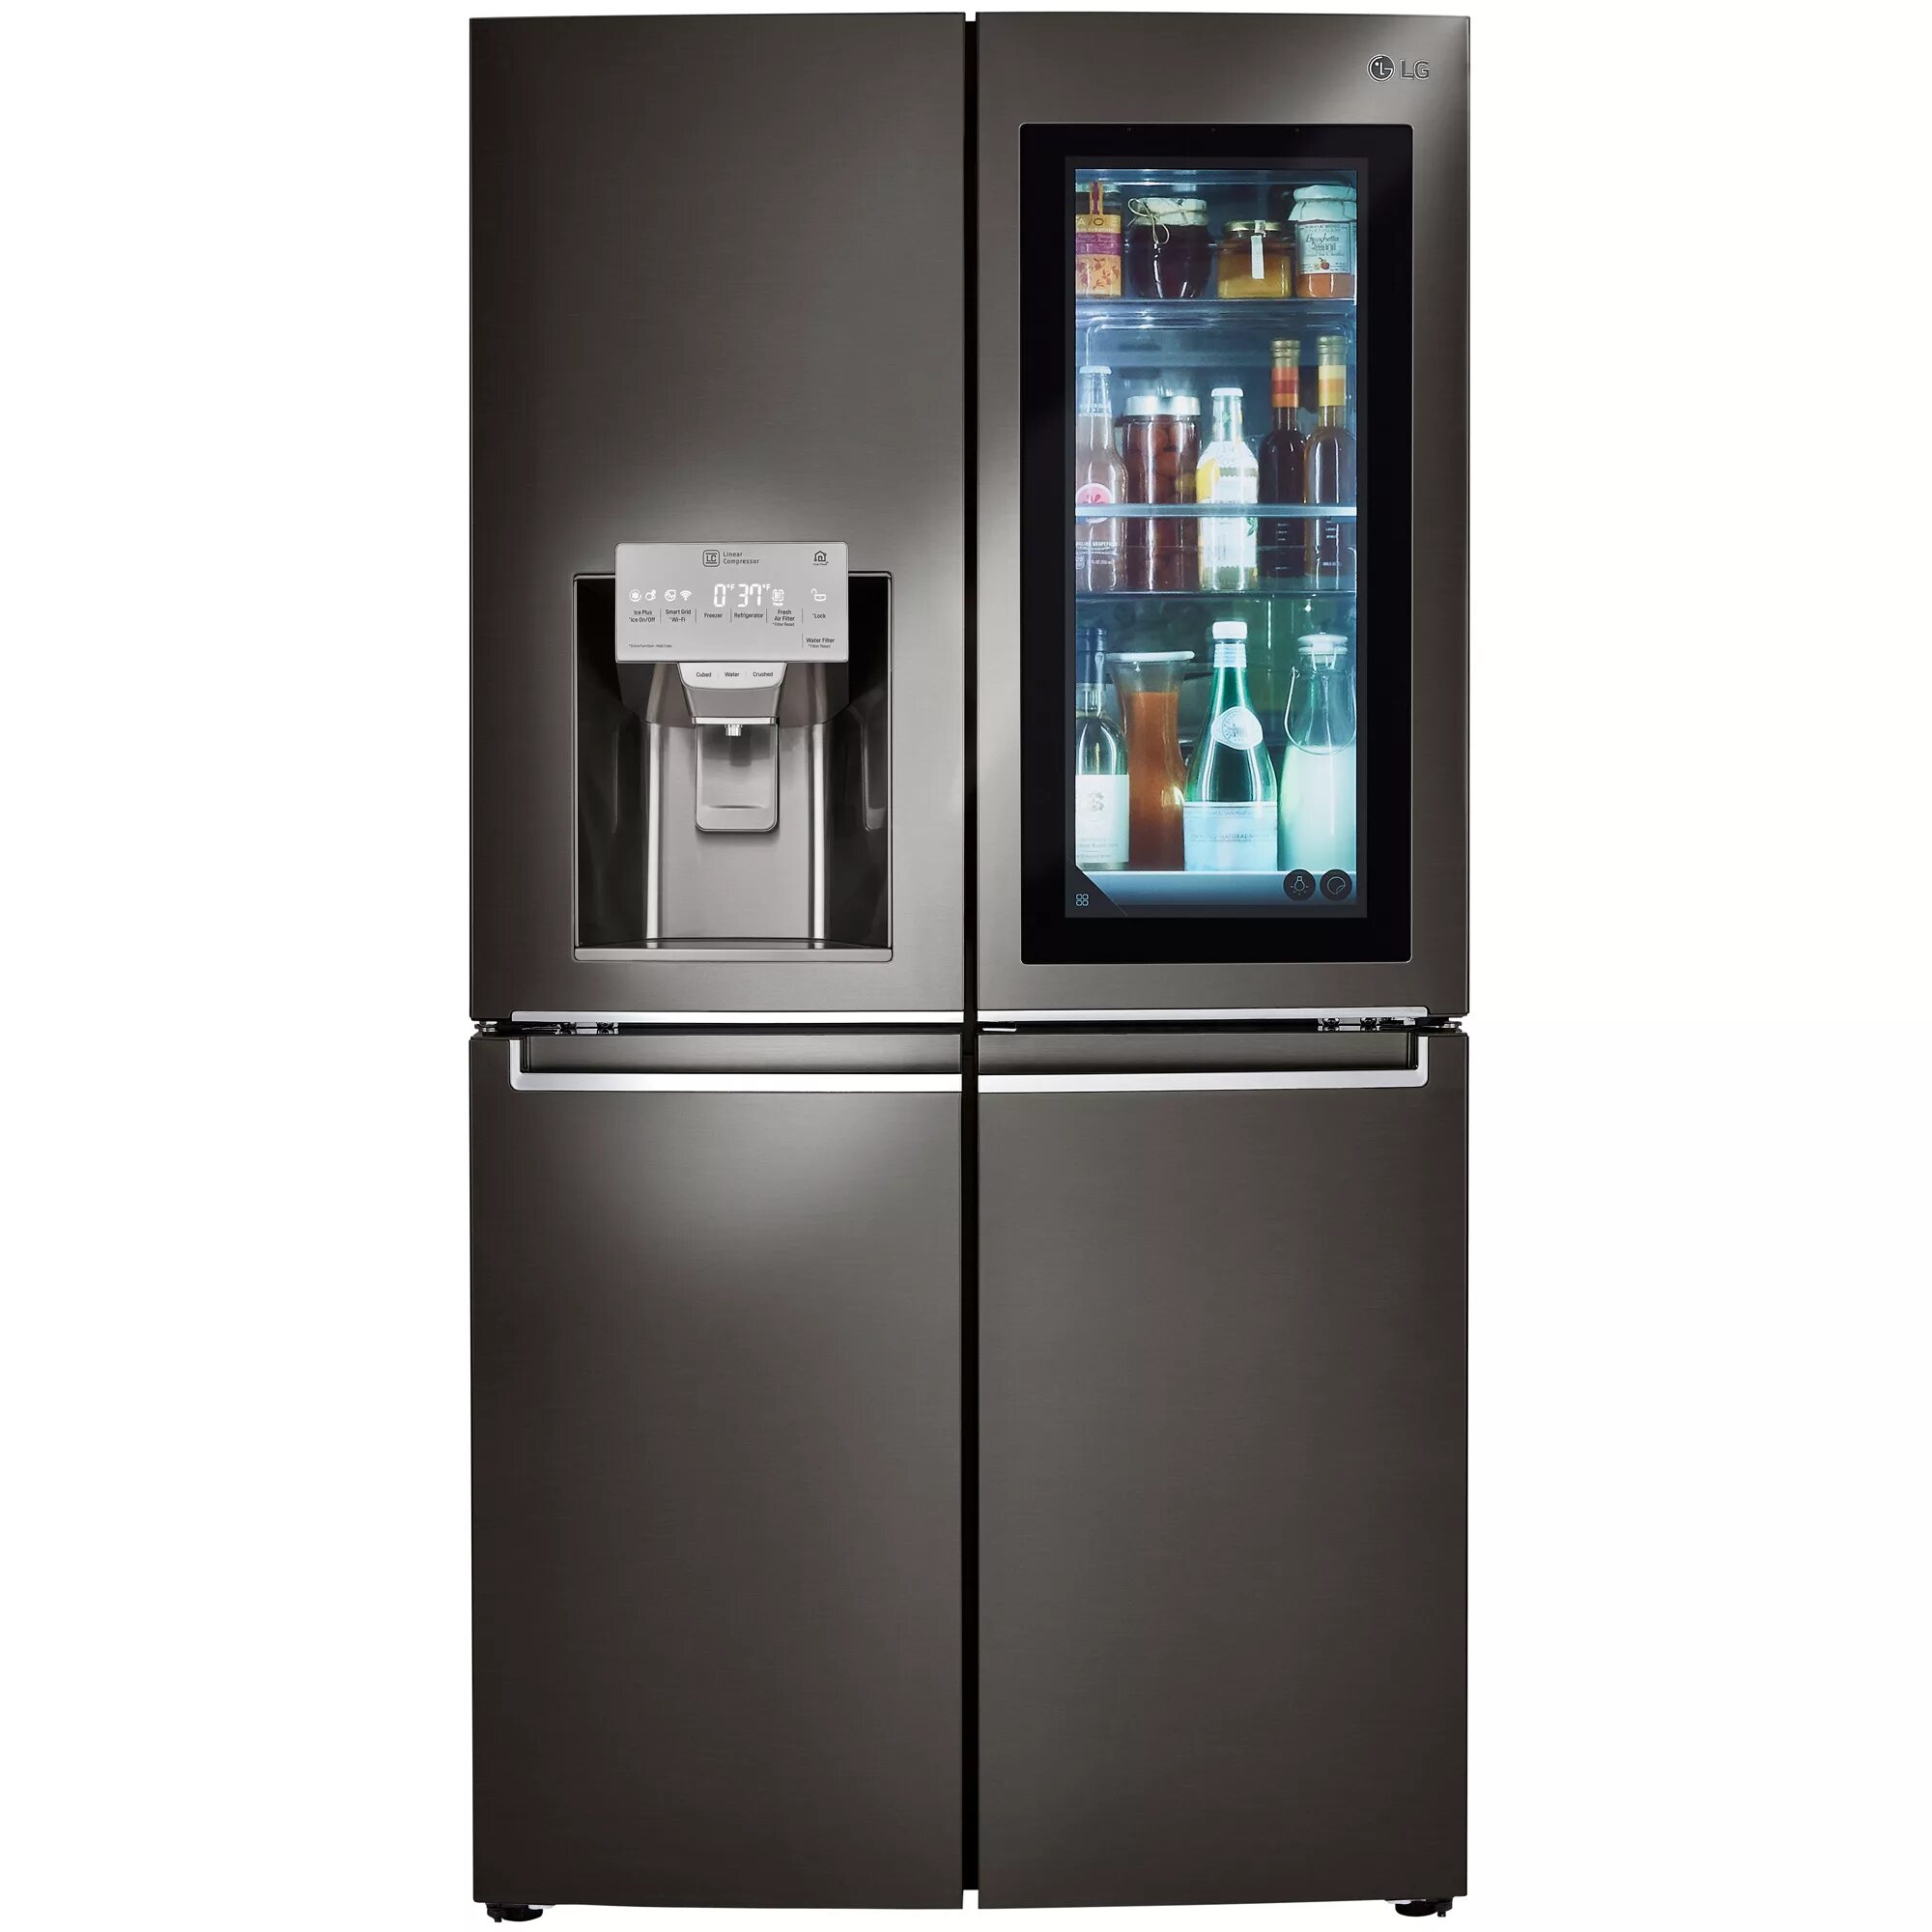 Сервисный центр холодильников лджи. LG THINQ холодильник. LG Smart Refrigerator. LG Smart холодильник. Смарт-холодильника instaview..